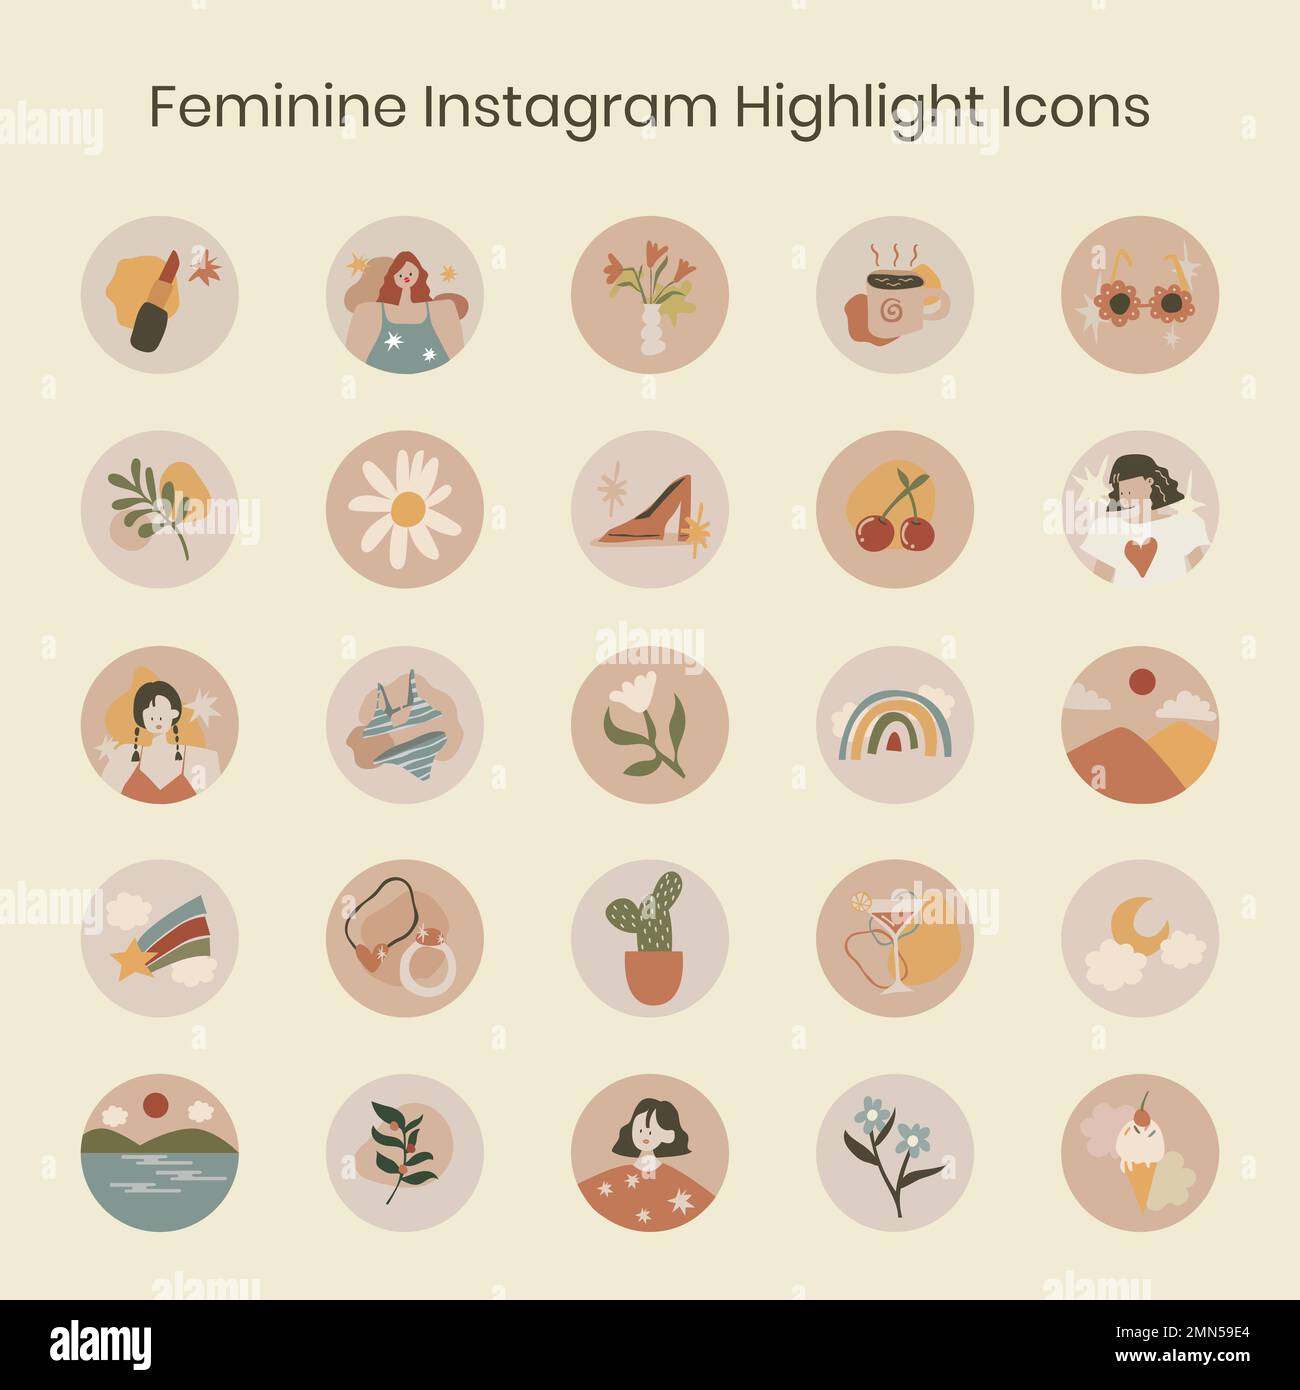 Instagram highlight cover, lifestyle illustration in feminine earth ...